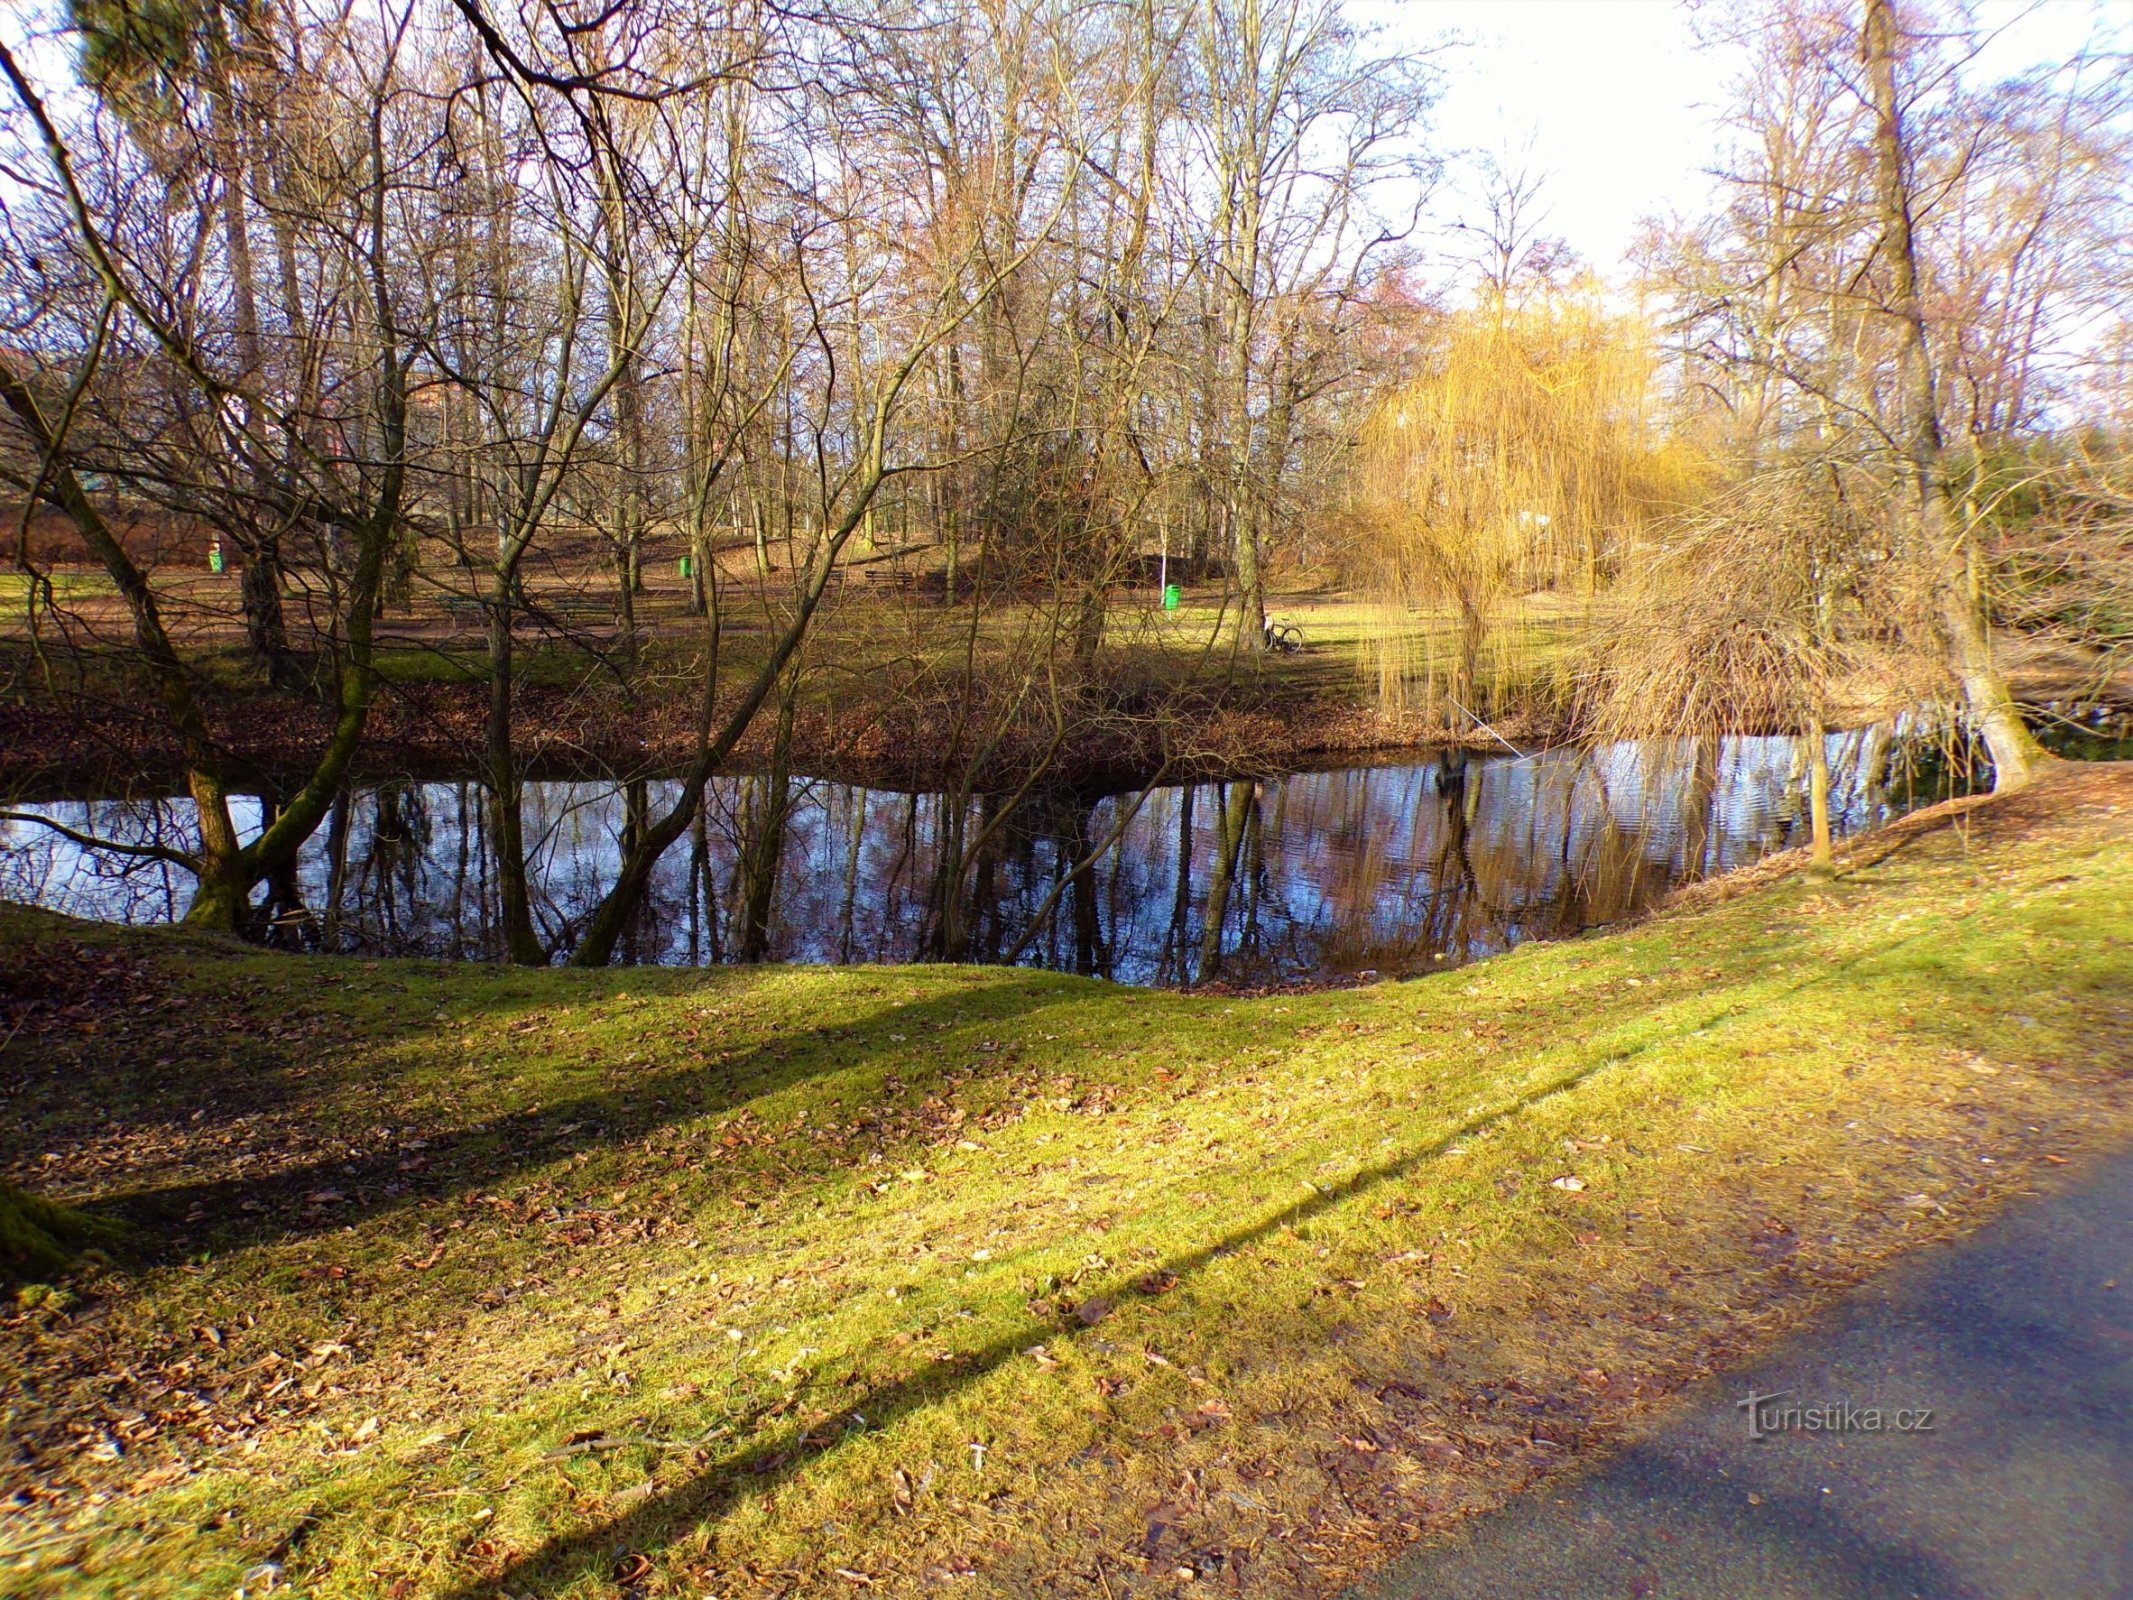 Sø i Vinice-parken (Pardubice, 16.2.2022/XNUMX/XNUMX)